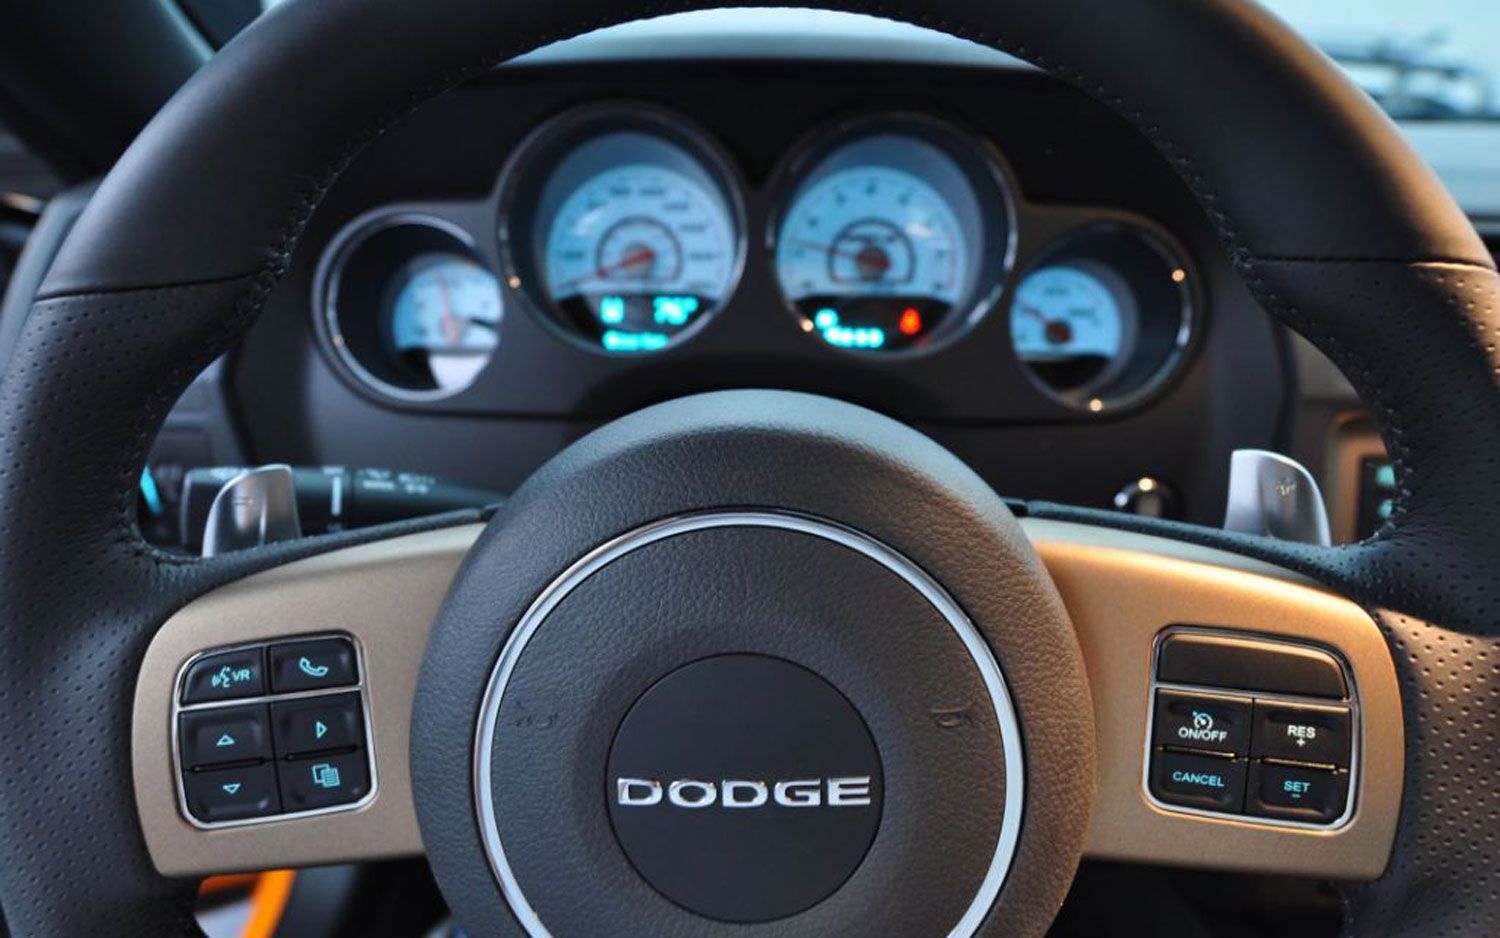 2013 Dodge Challenger SRT8 by Tim McGraw